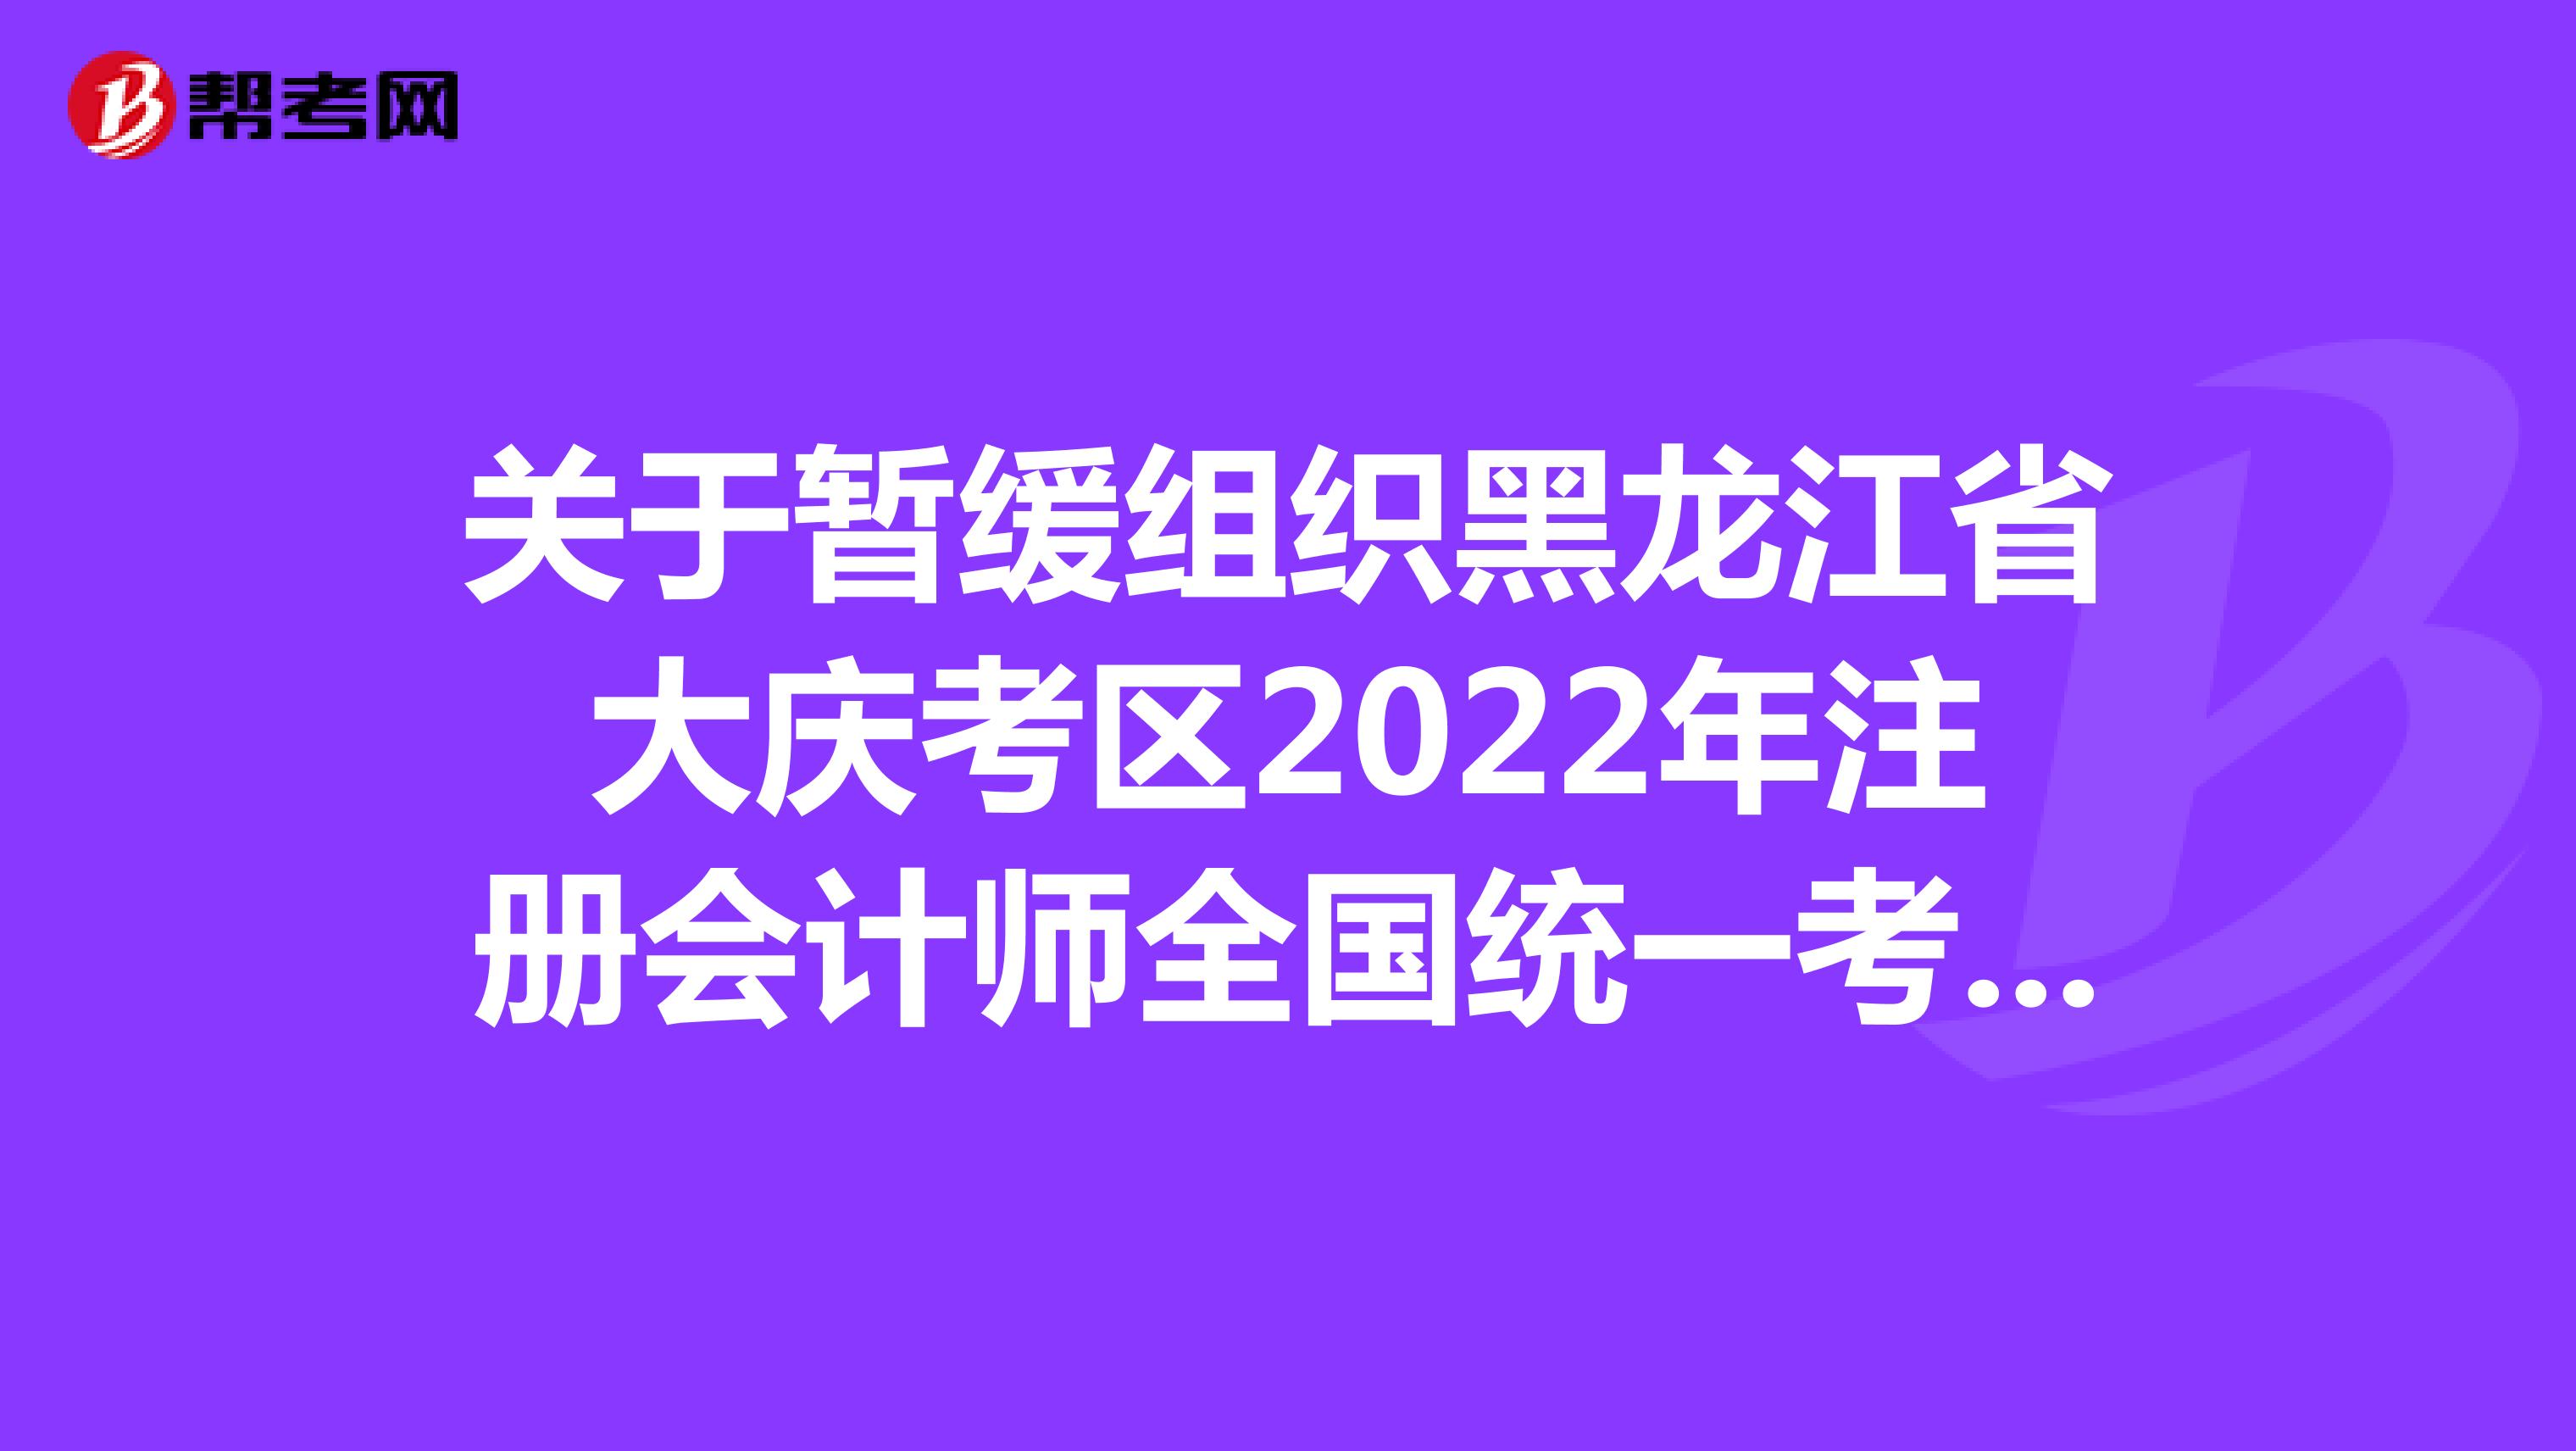 关于暂缓组织黑龙江省大庆考区2022年注册会计师全国统一考试(专业阶段考试)的公告